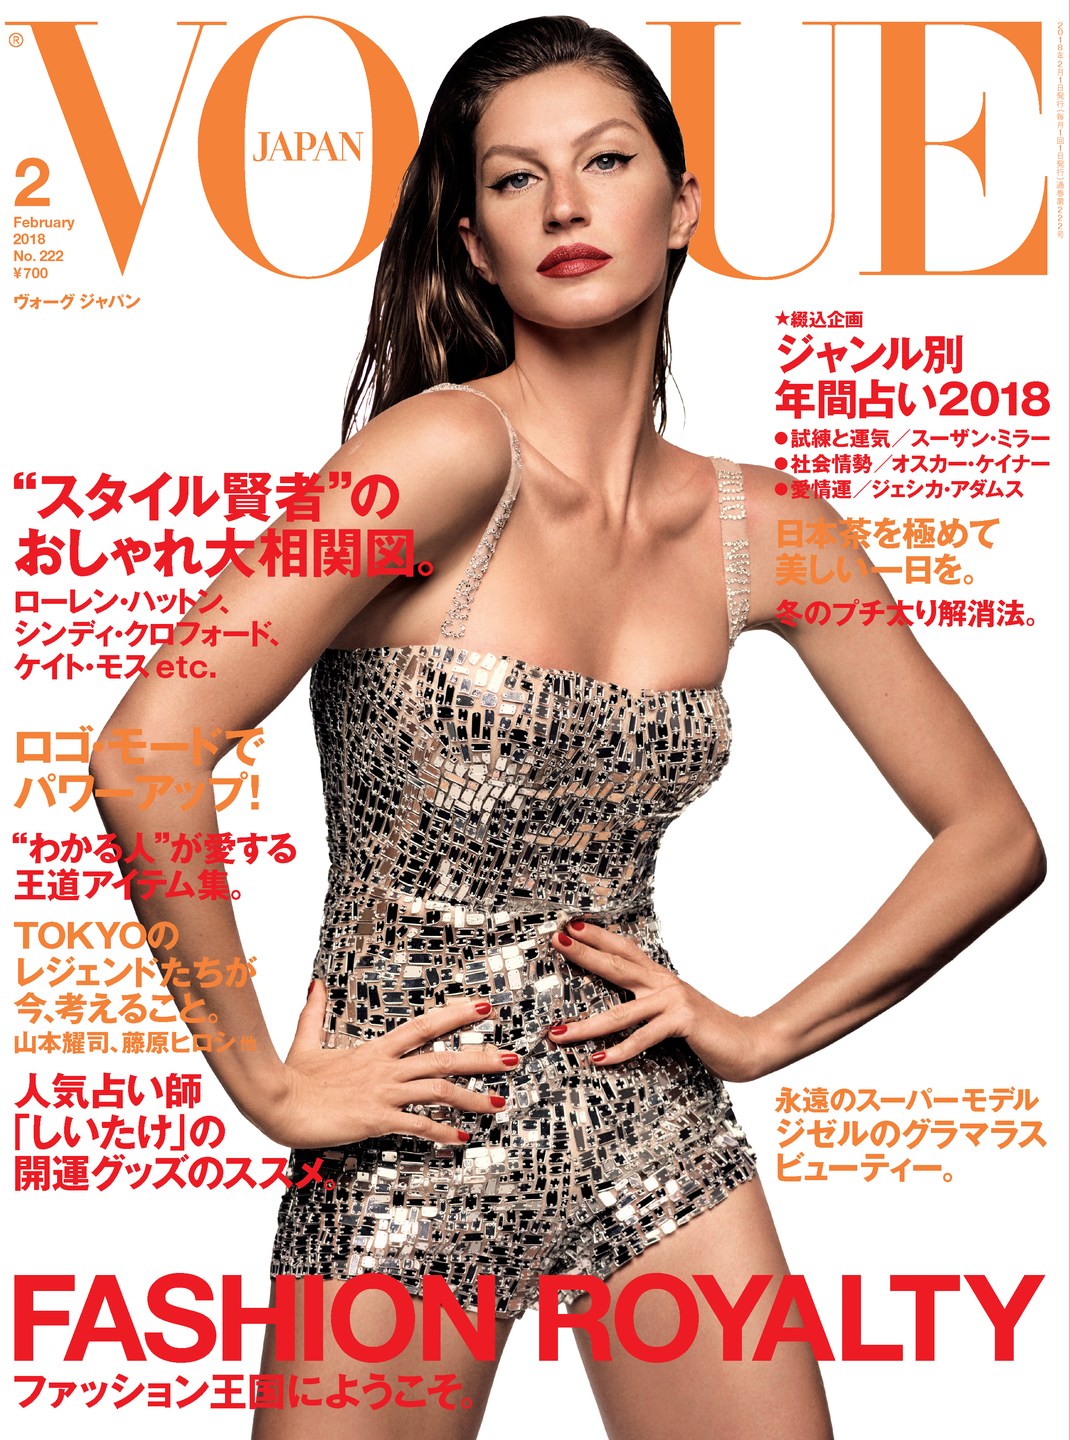 Vogue Japen February 2017 2.jpg